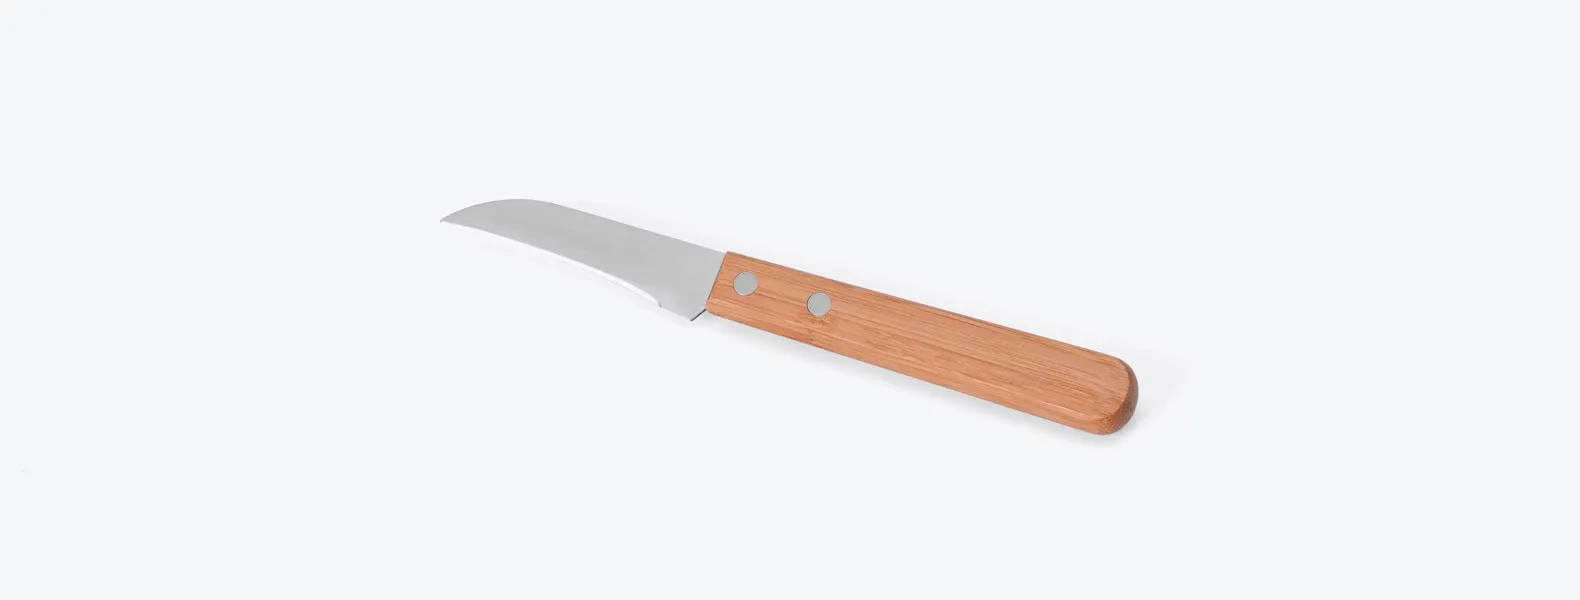 Conjunto de Facas em Bambu/Aço Inox; Acompanha faca 7'', faca 4 para frutas e faca 3 para legumes em Bambu/Inox. Como cortesia, na faca 7 fazemos uma gravação com os cortes do boi.